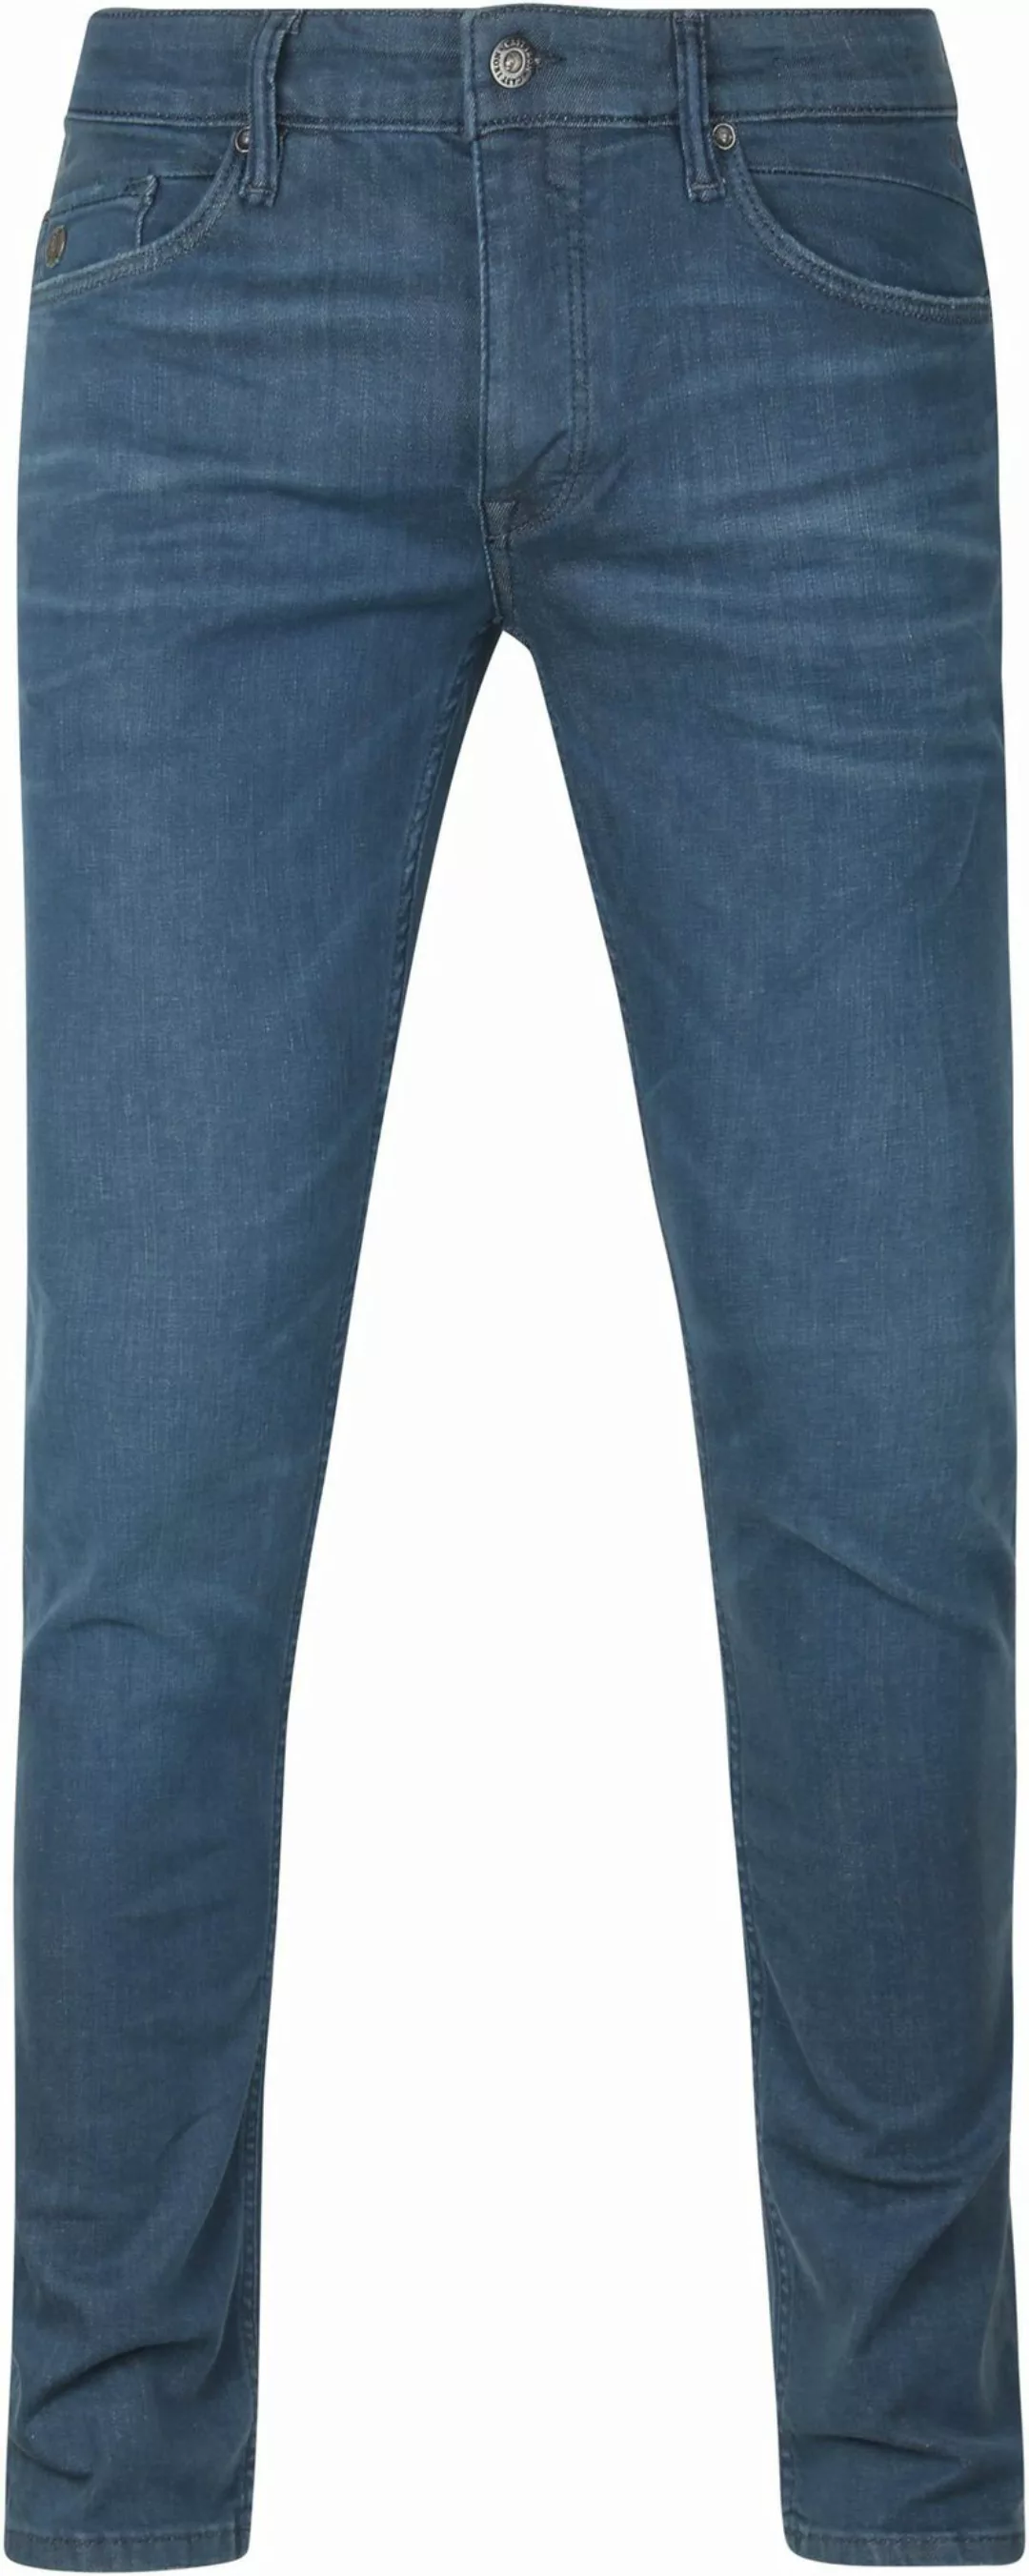 Cast Iron Riser Slim Jeans Blau - Größe W 30 - L 34 günstig online kaufen